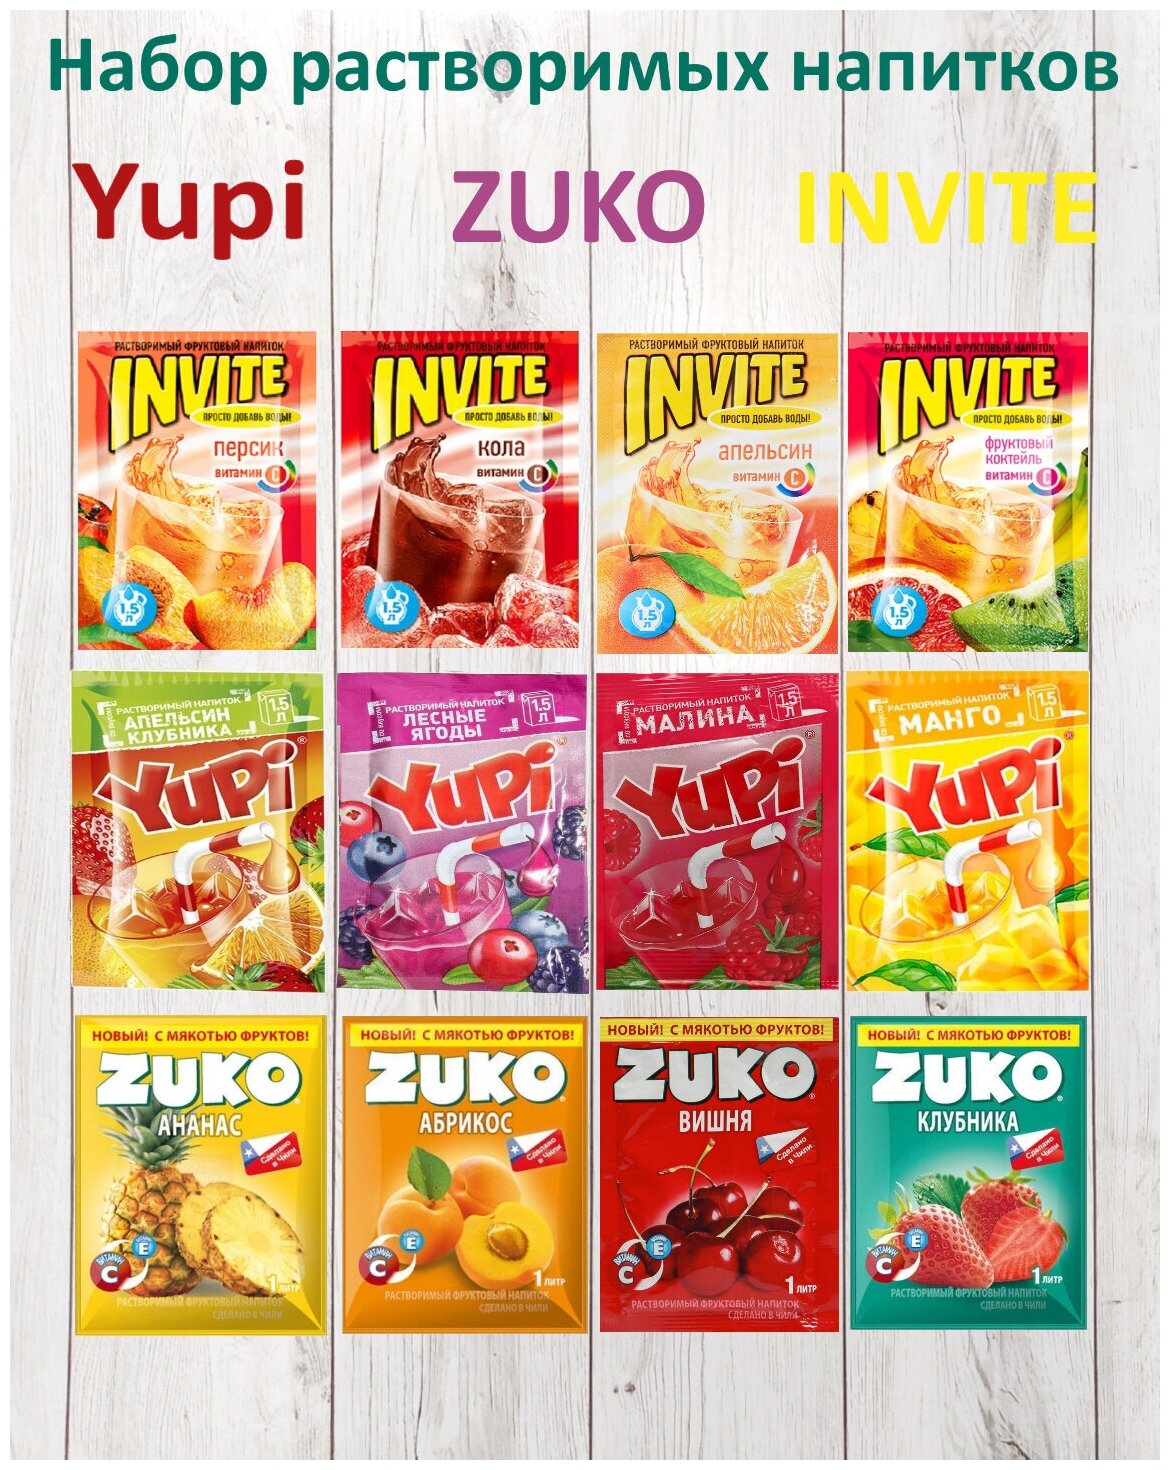 Растворимый напиток YUPI ZUKO INVITE 12 пакетиков